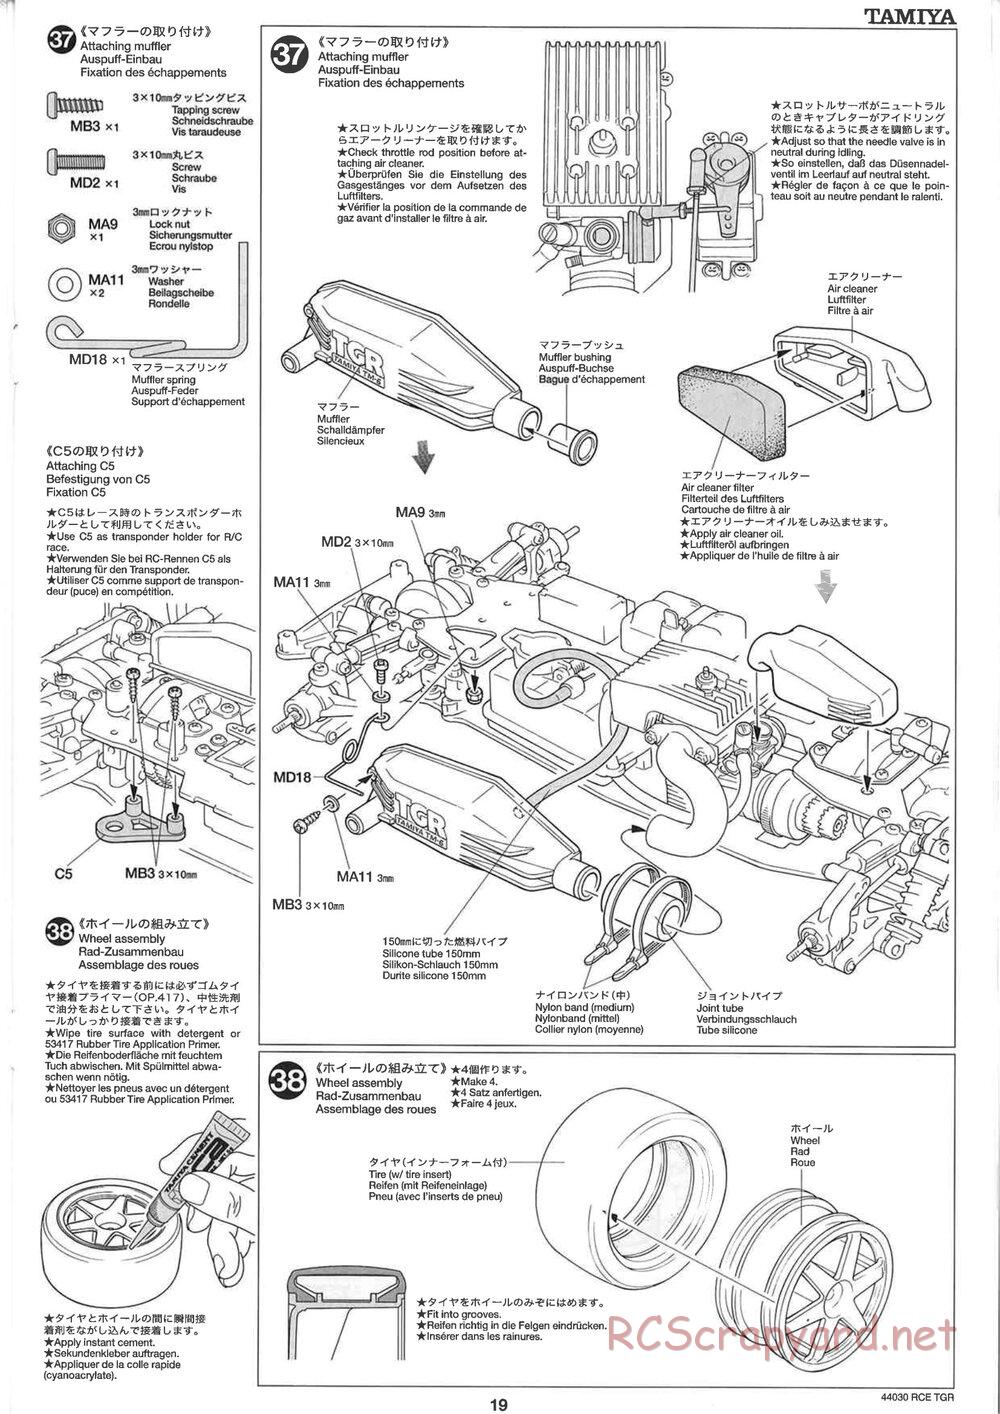 Tamiya - TGR Chassis - Manual - Page 19